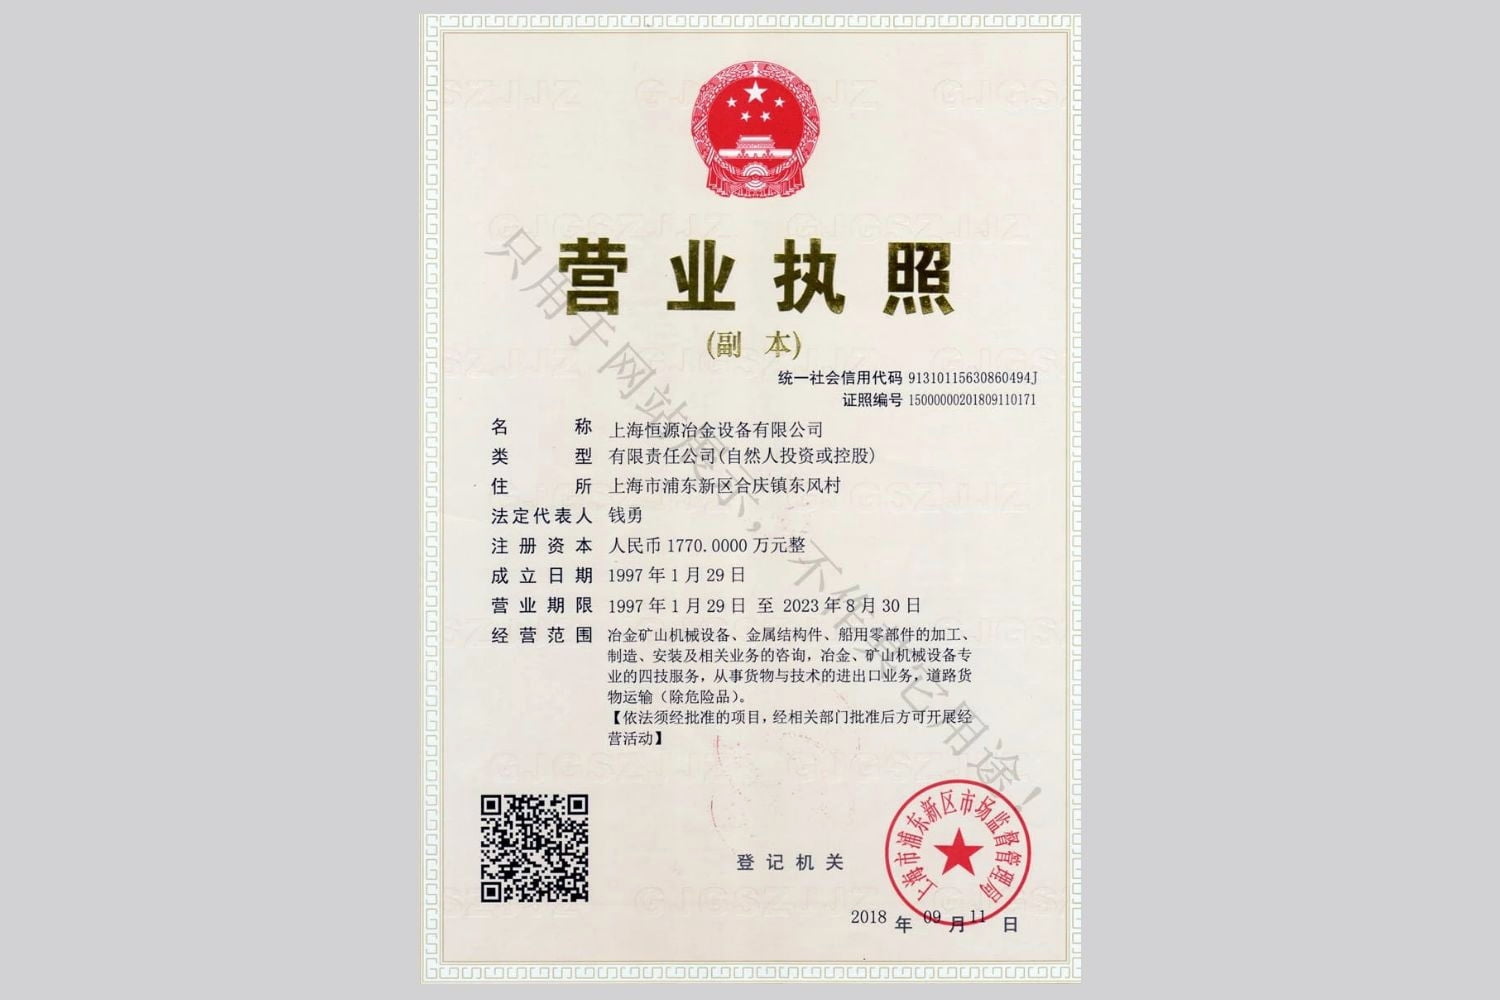  上海恒源冶金設備有限公司營業執照